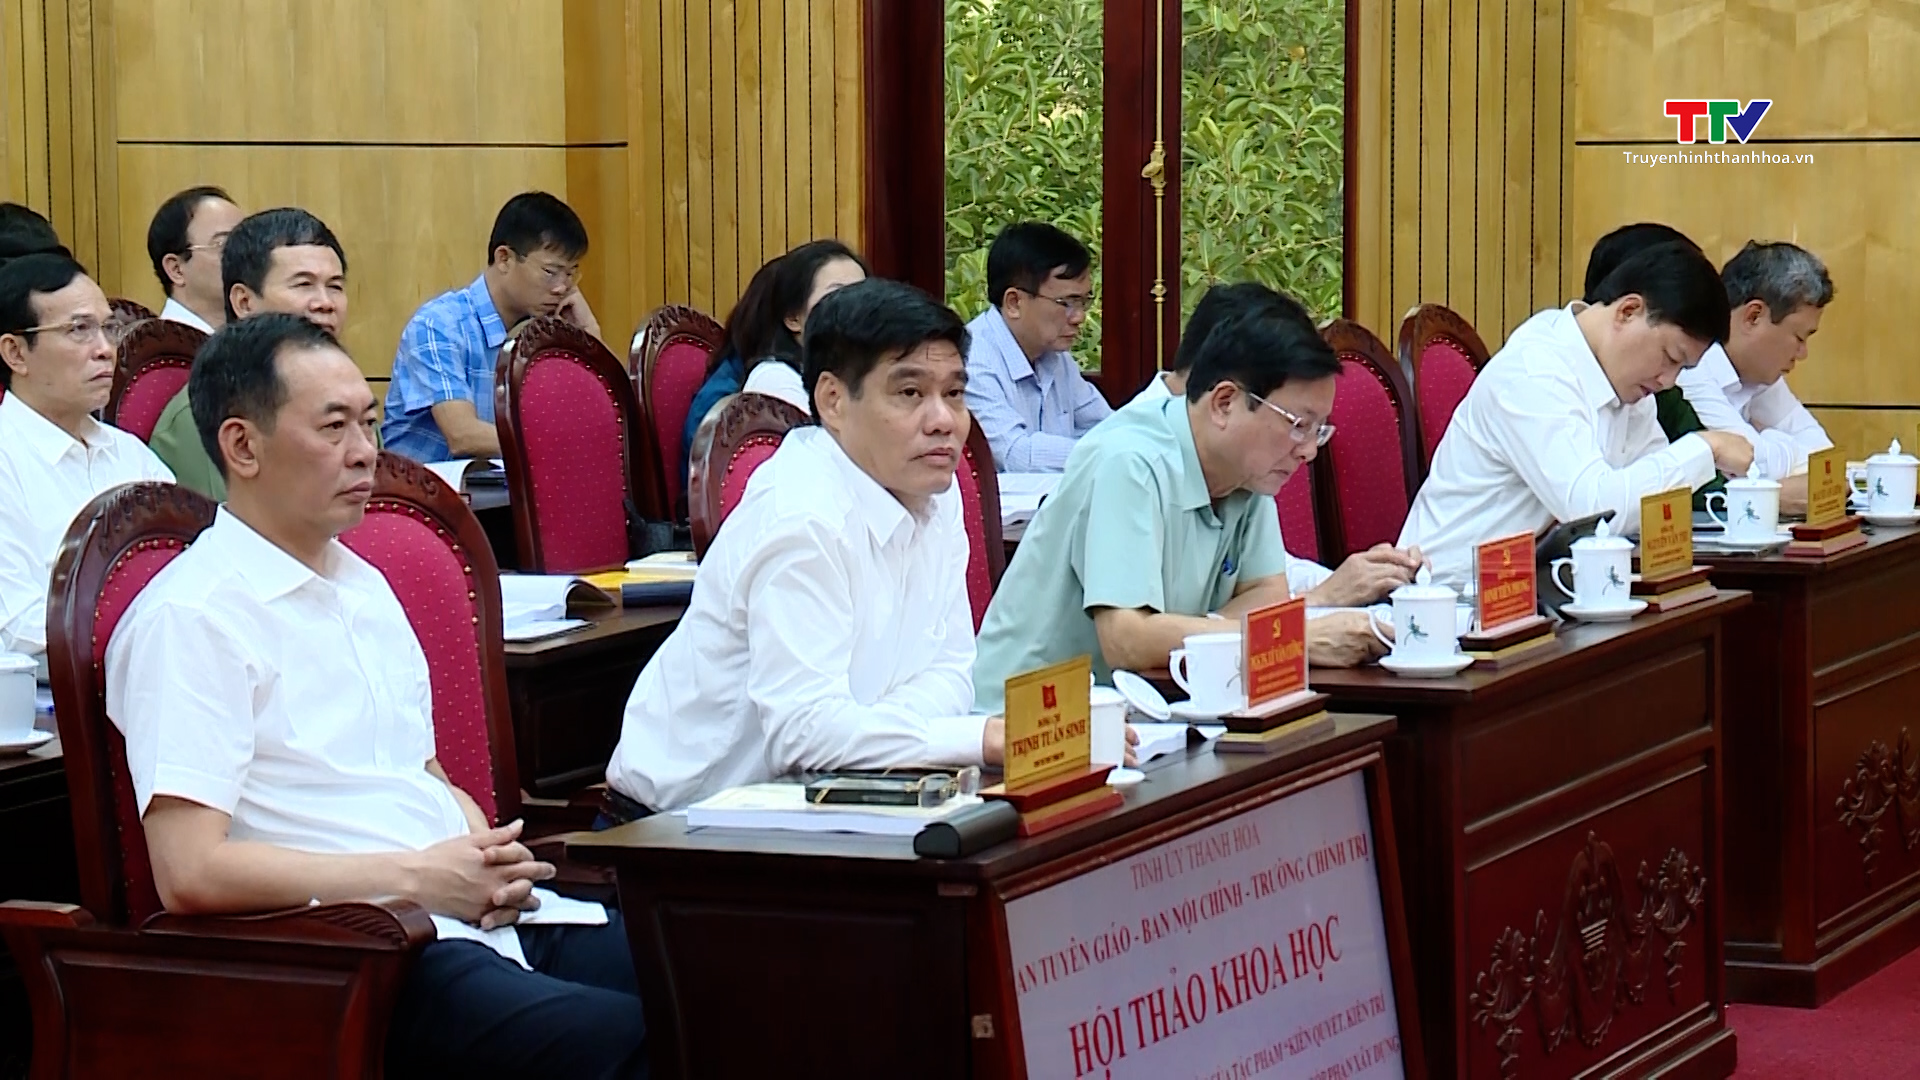 Lan toả giá trị cuốn sách về phòng chống tham nhũng của Tổng bí thư Nguyễn Phú Trọng- Ảnh 6.